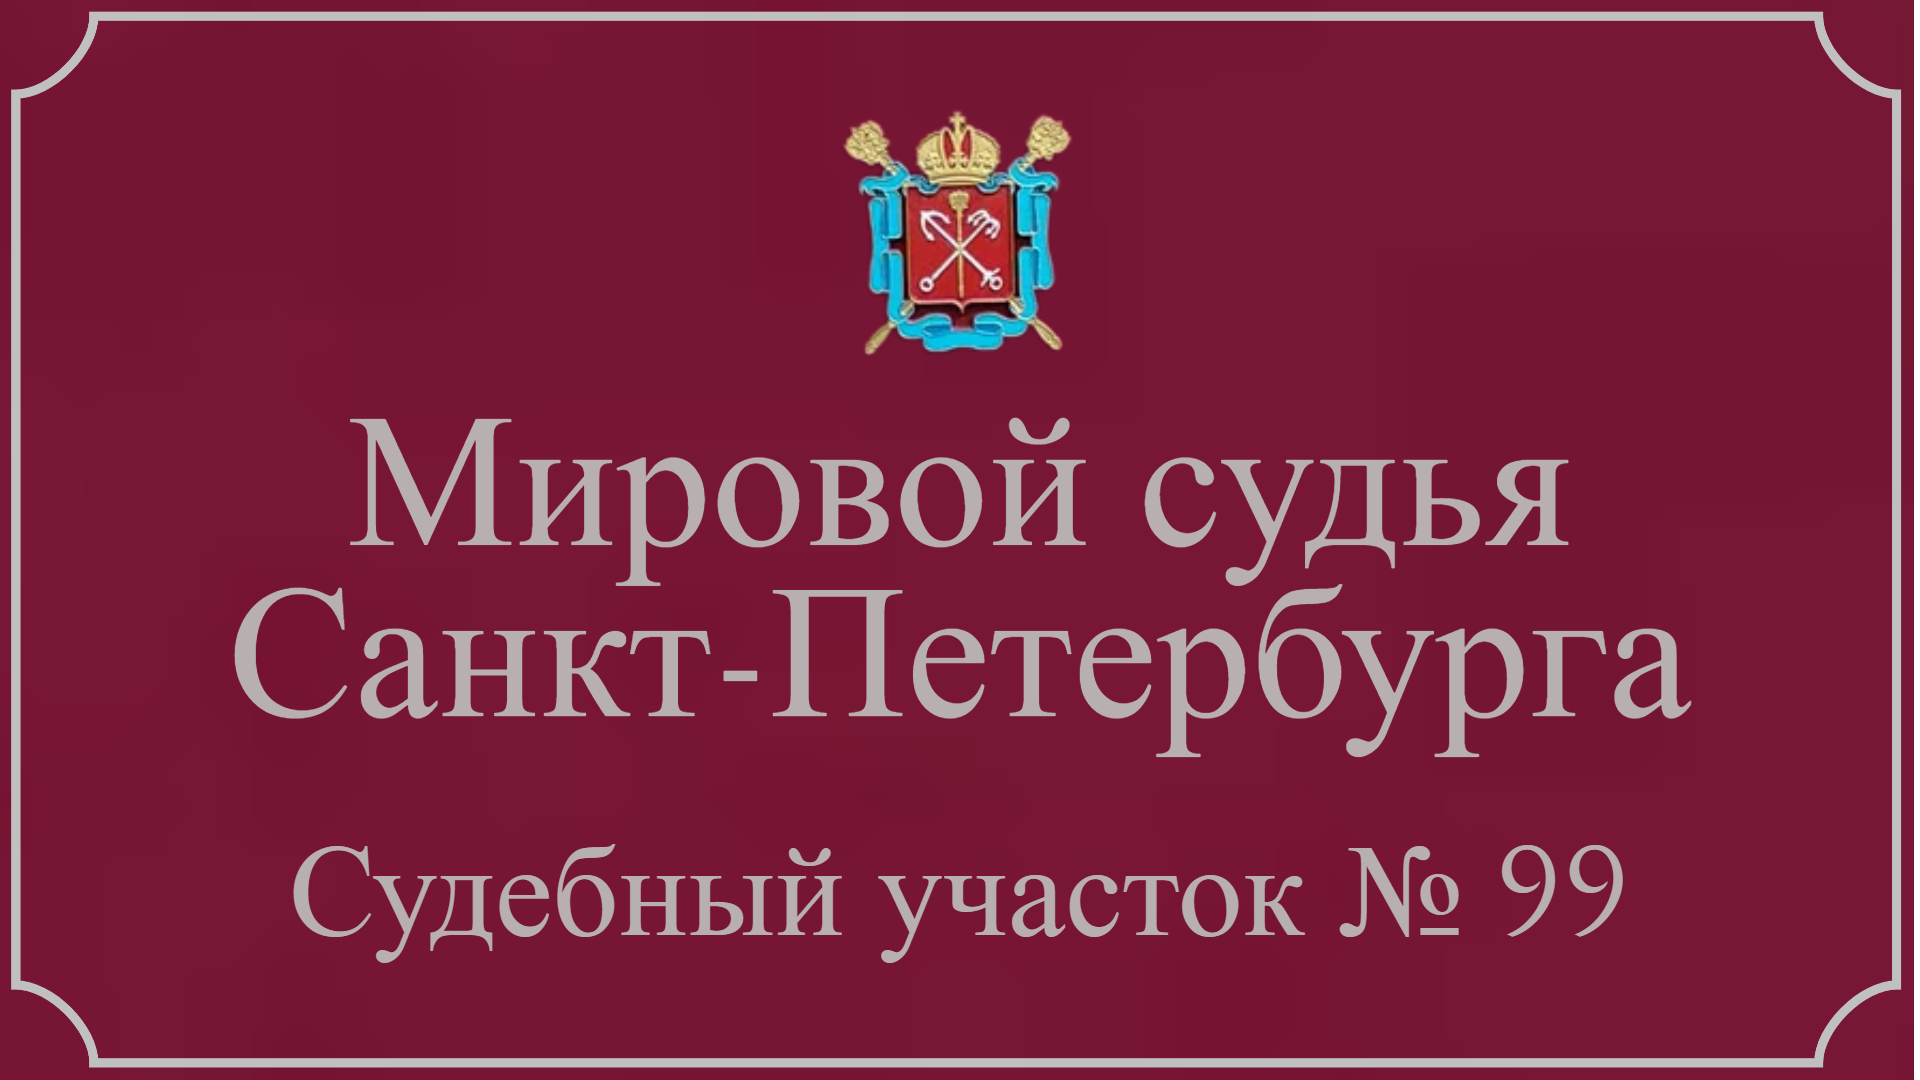 Информация по 99 судебному участку в Санкт-Петербурге.